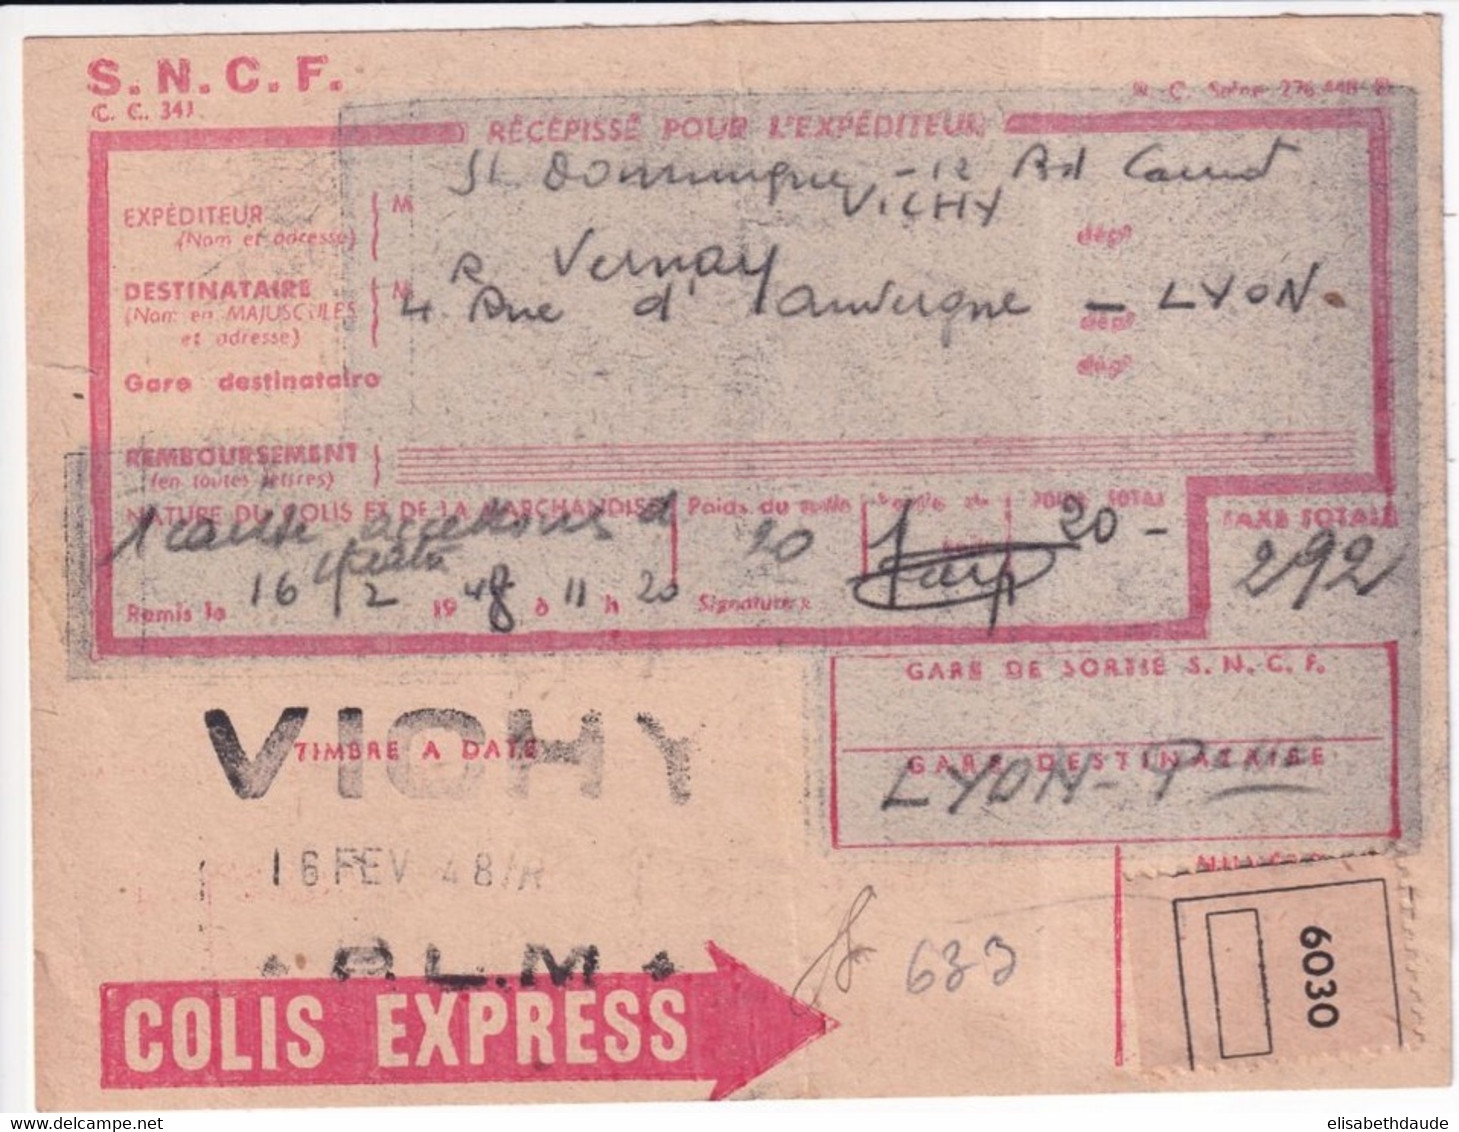 COLIS POSTAUX - 1948 - RECEPISSE COLIS EXPRESS ! De VICHY (ALLIER) => LYON - Storia Postale